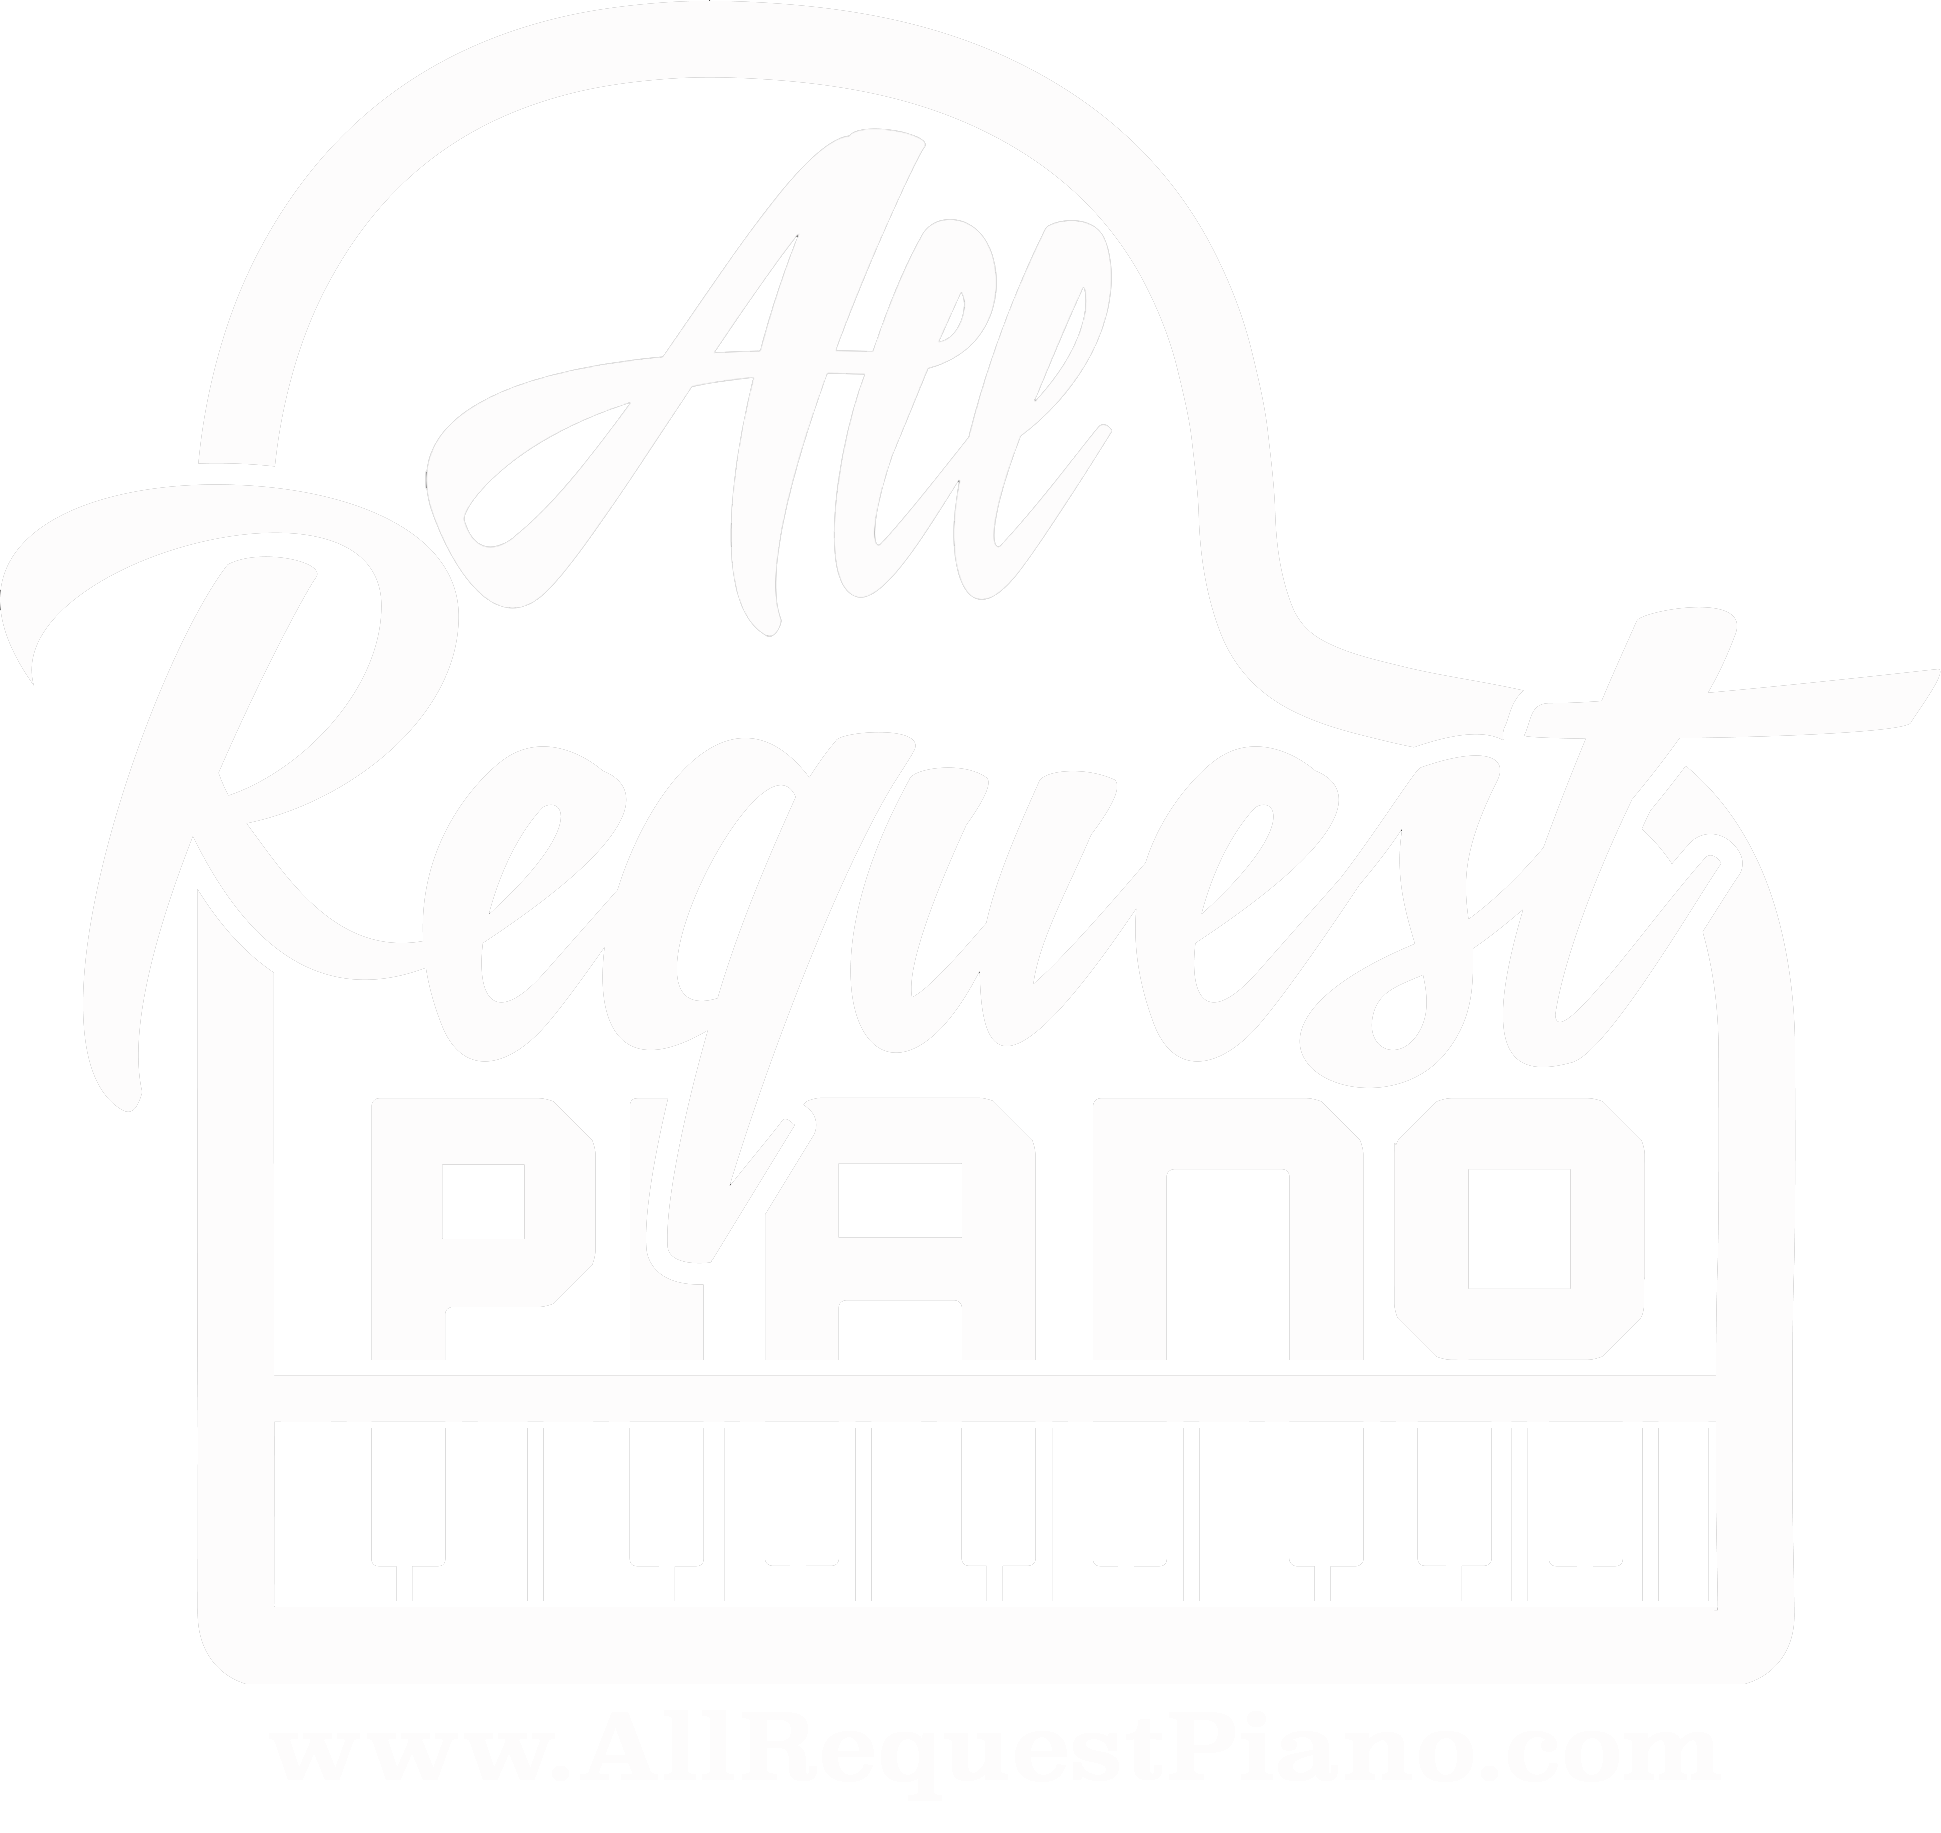 All Request Piano